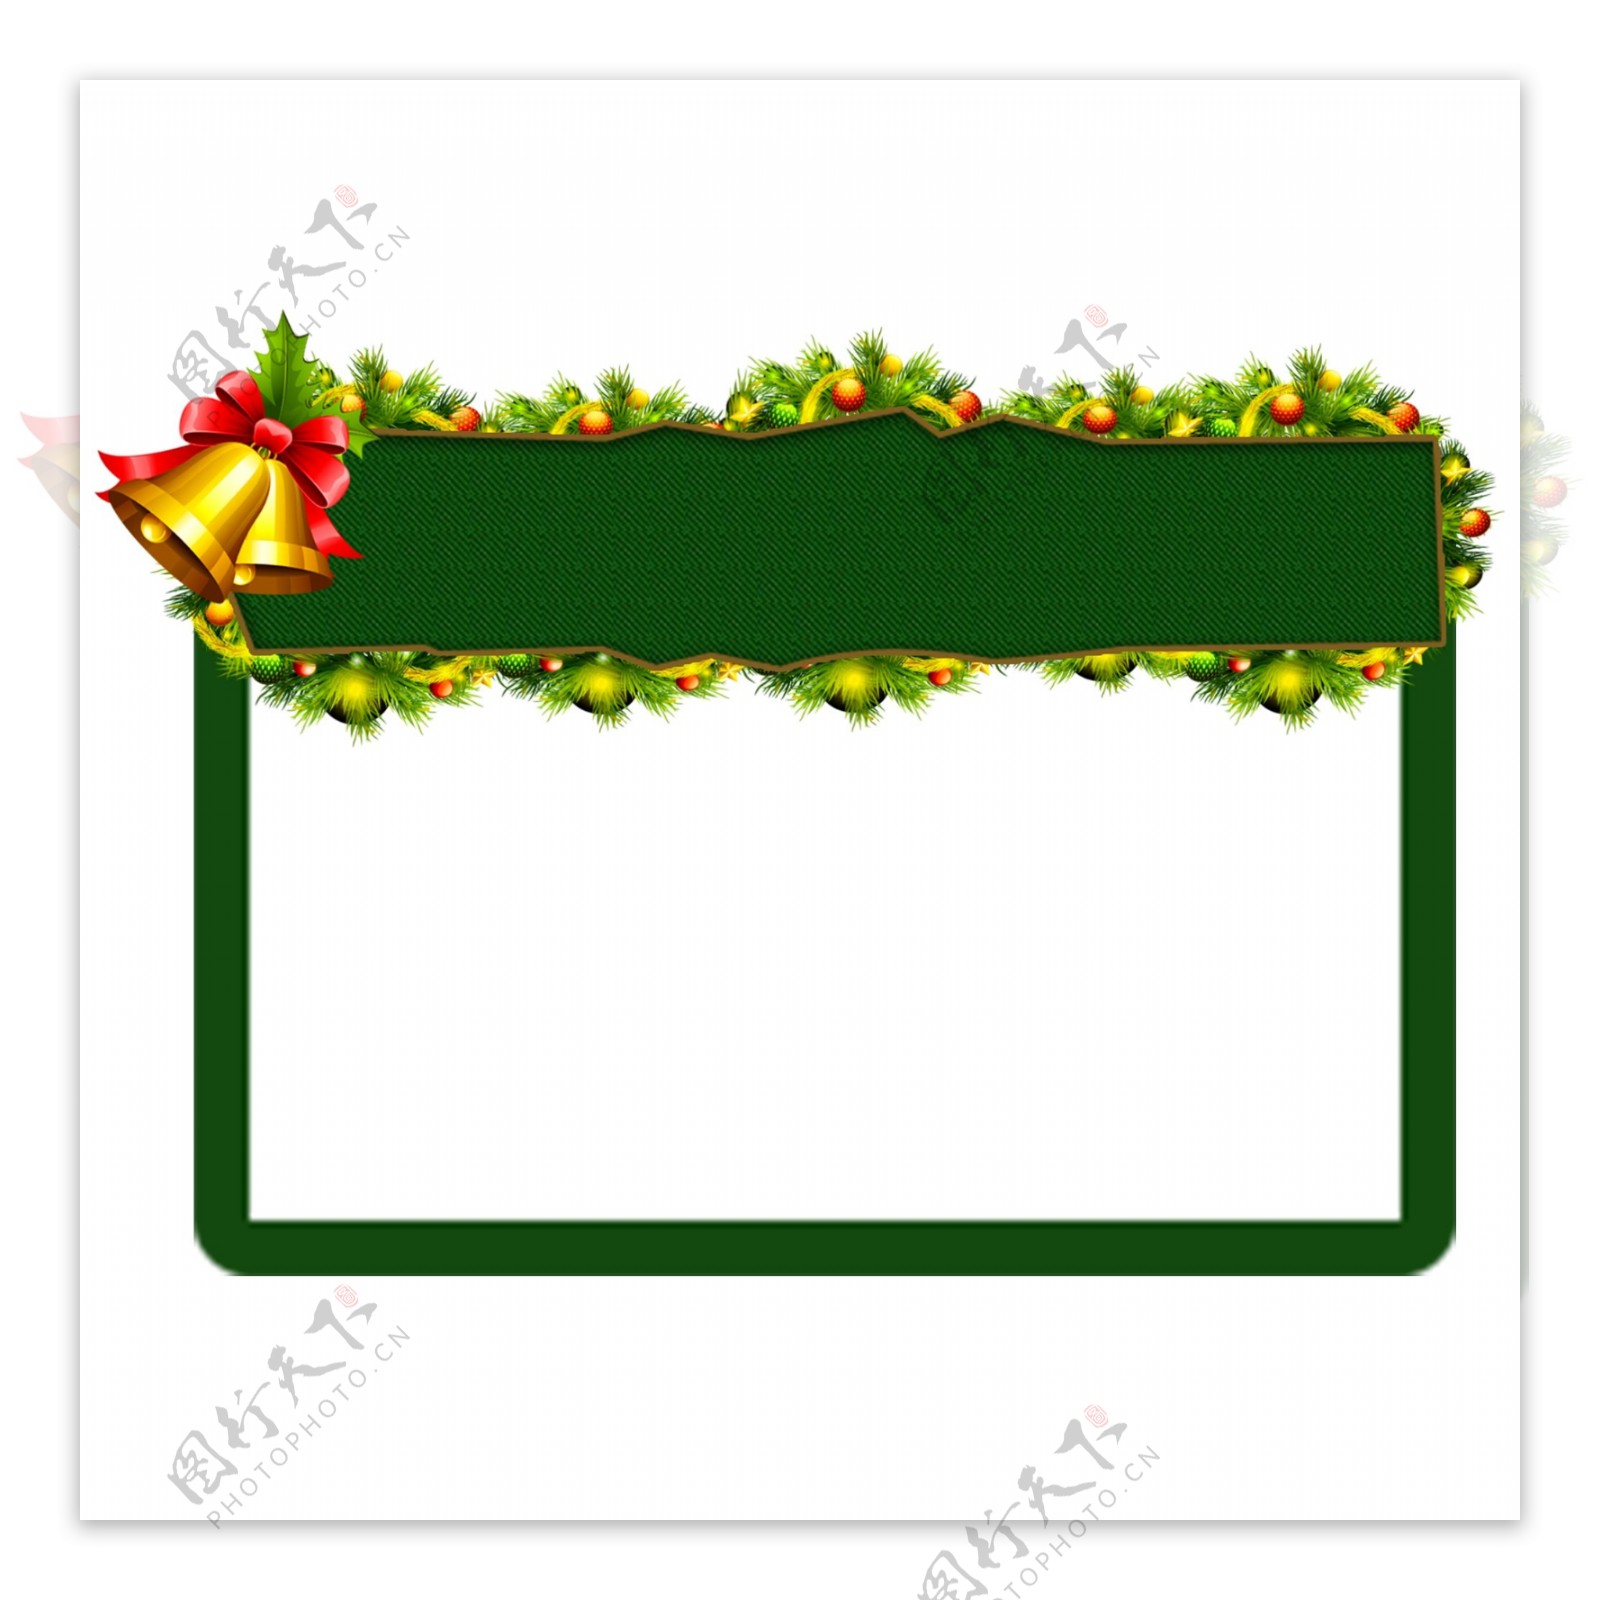 绿边的圣诞边框素材